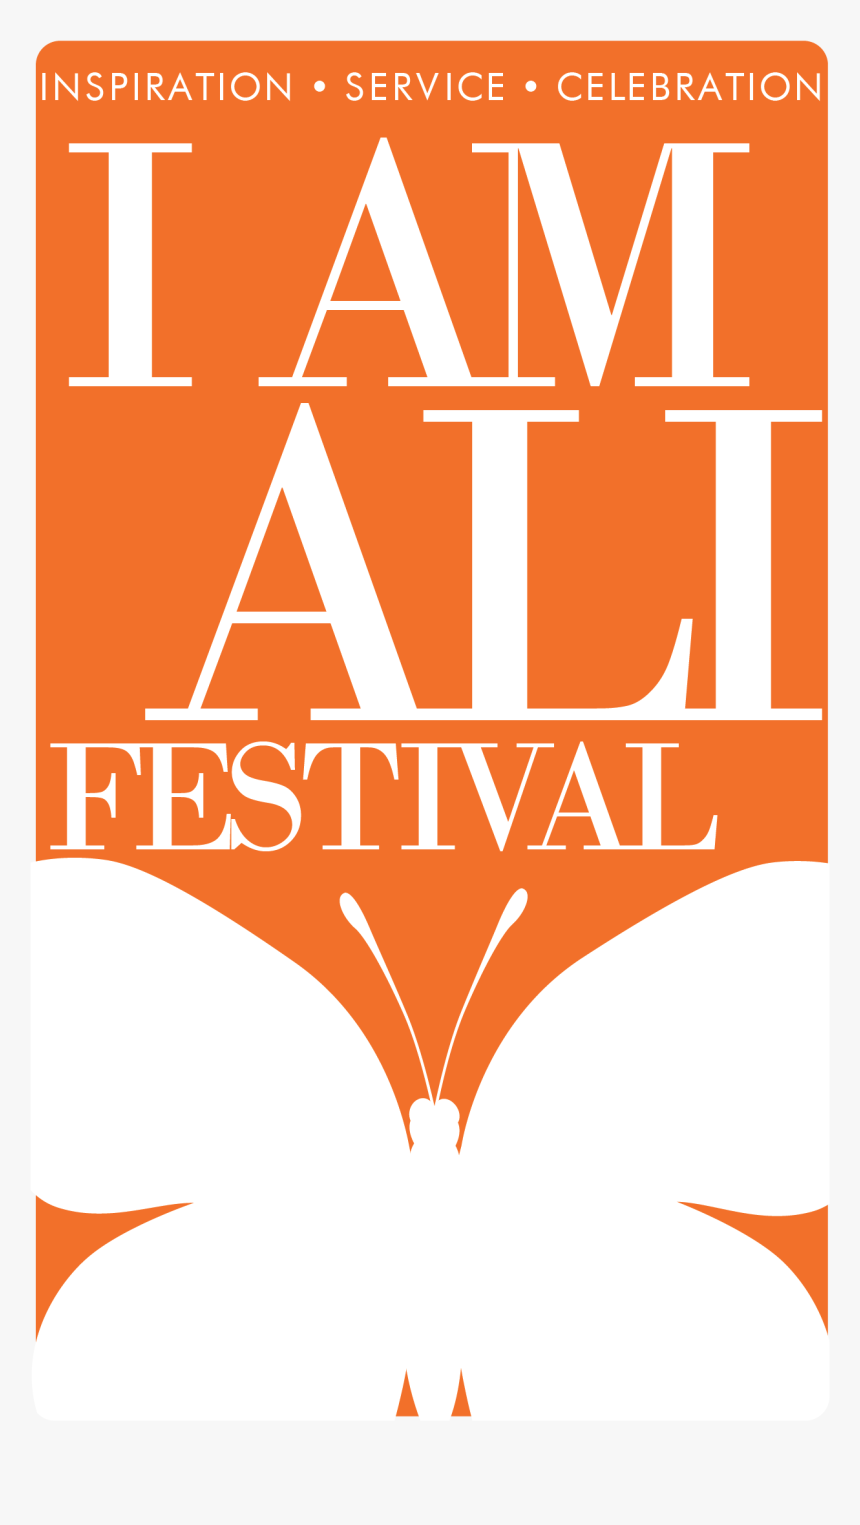 I Am Ali Festival Logo - Universitat D Andorra, HD Png Download, Free Download